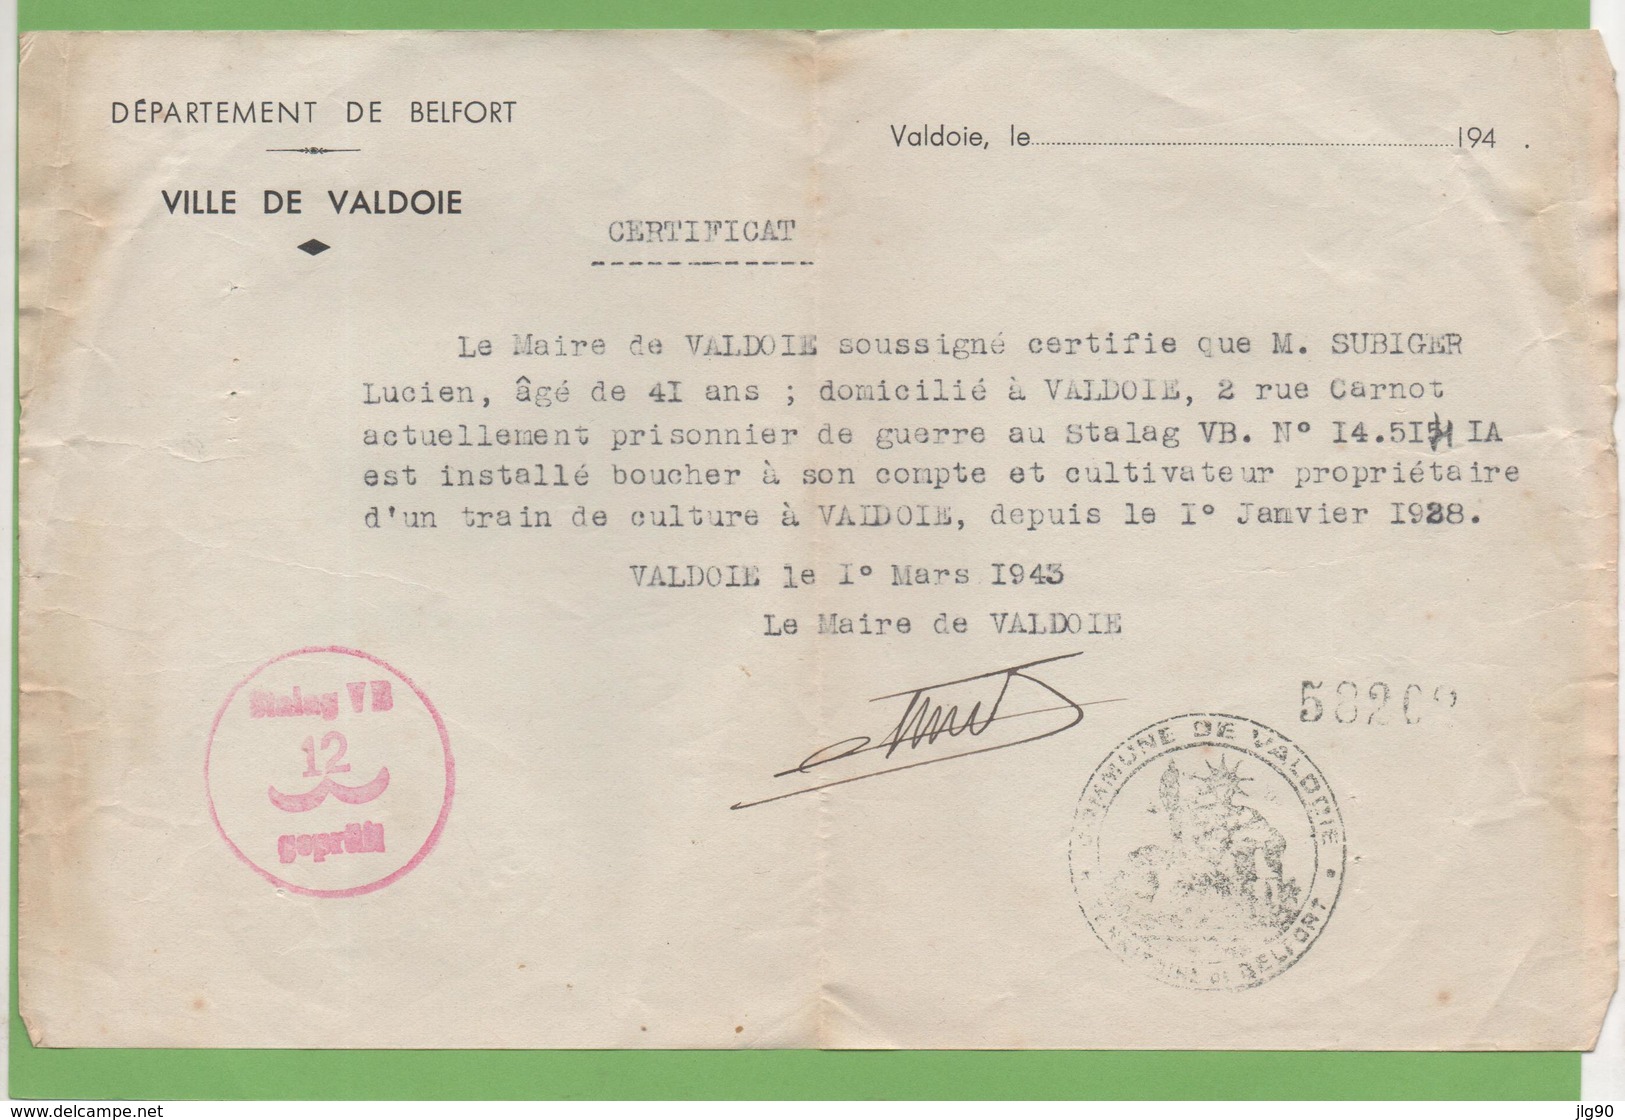 Certificat D'exercice Profession établi En Mairie De VALDOIE (90) Pour Un Prisonnier En Allemagne Stalag VB 12 1/03/43 - 1939-45